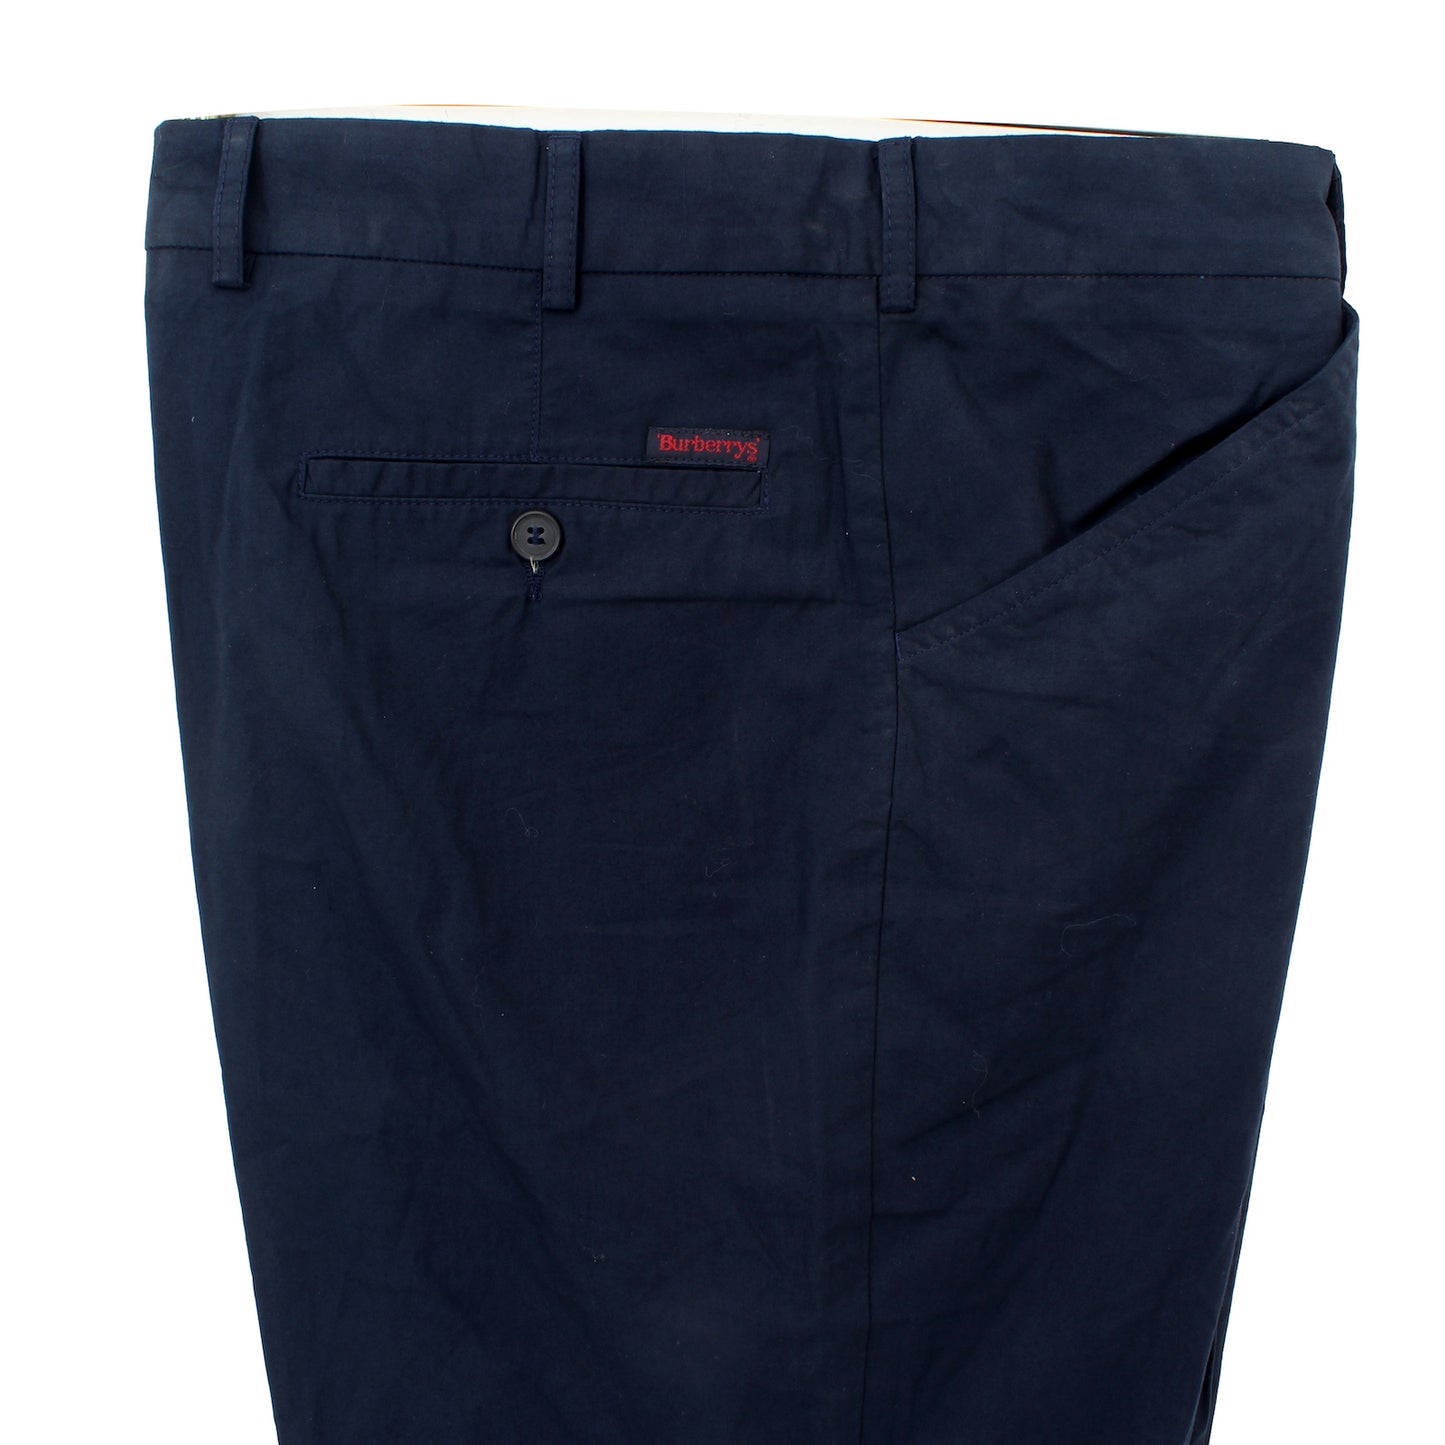 Burberry Blue Cotton Trousers Vintage 1990s